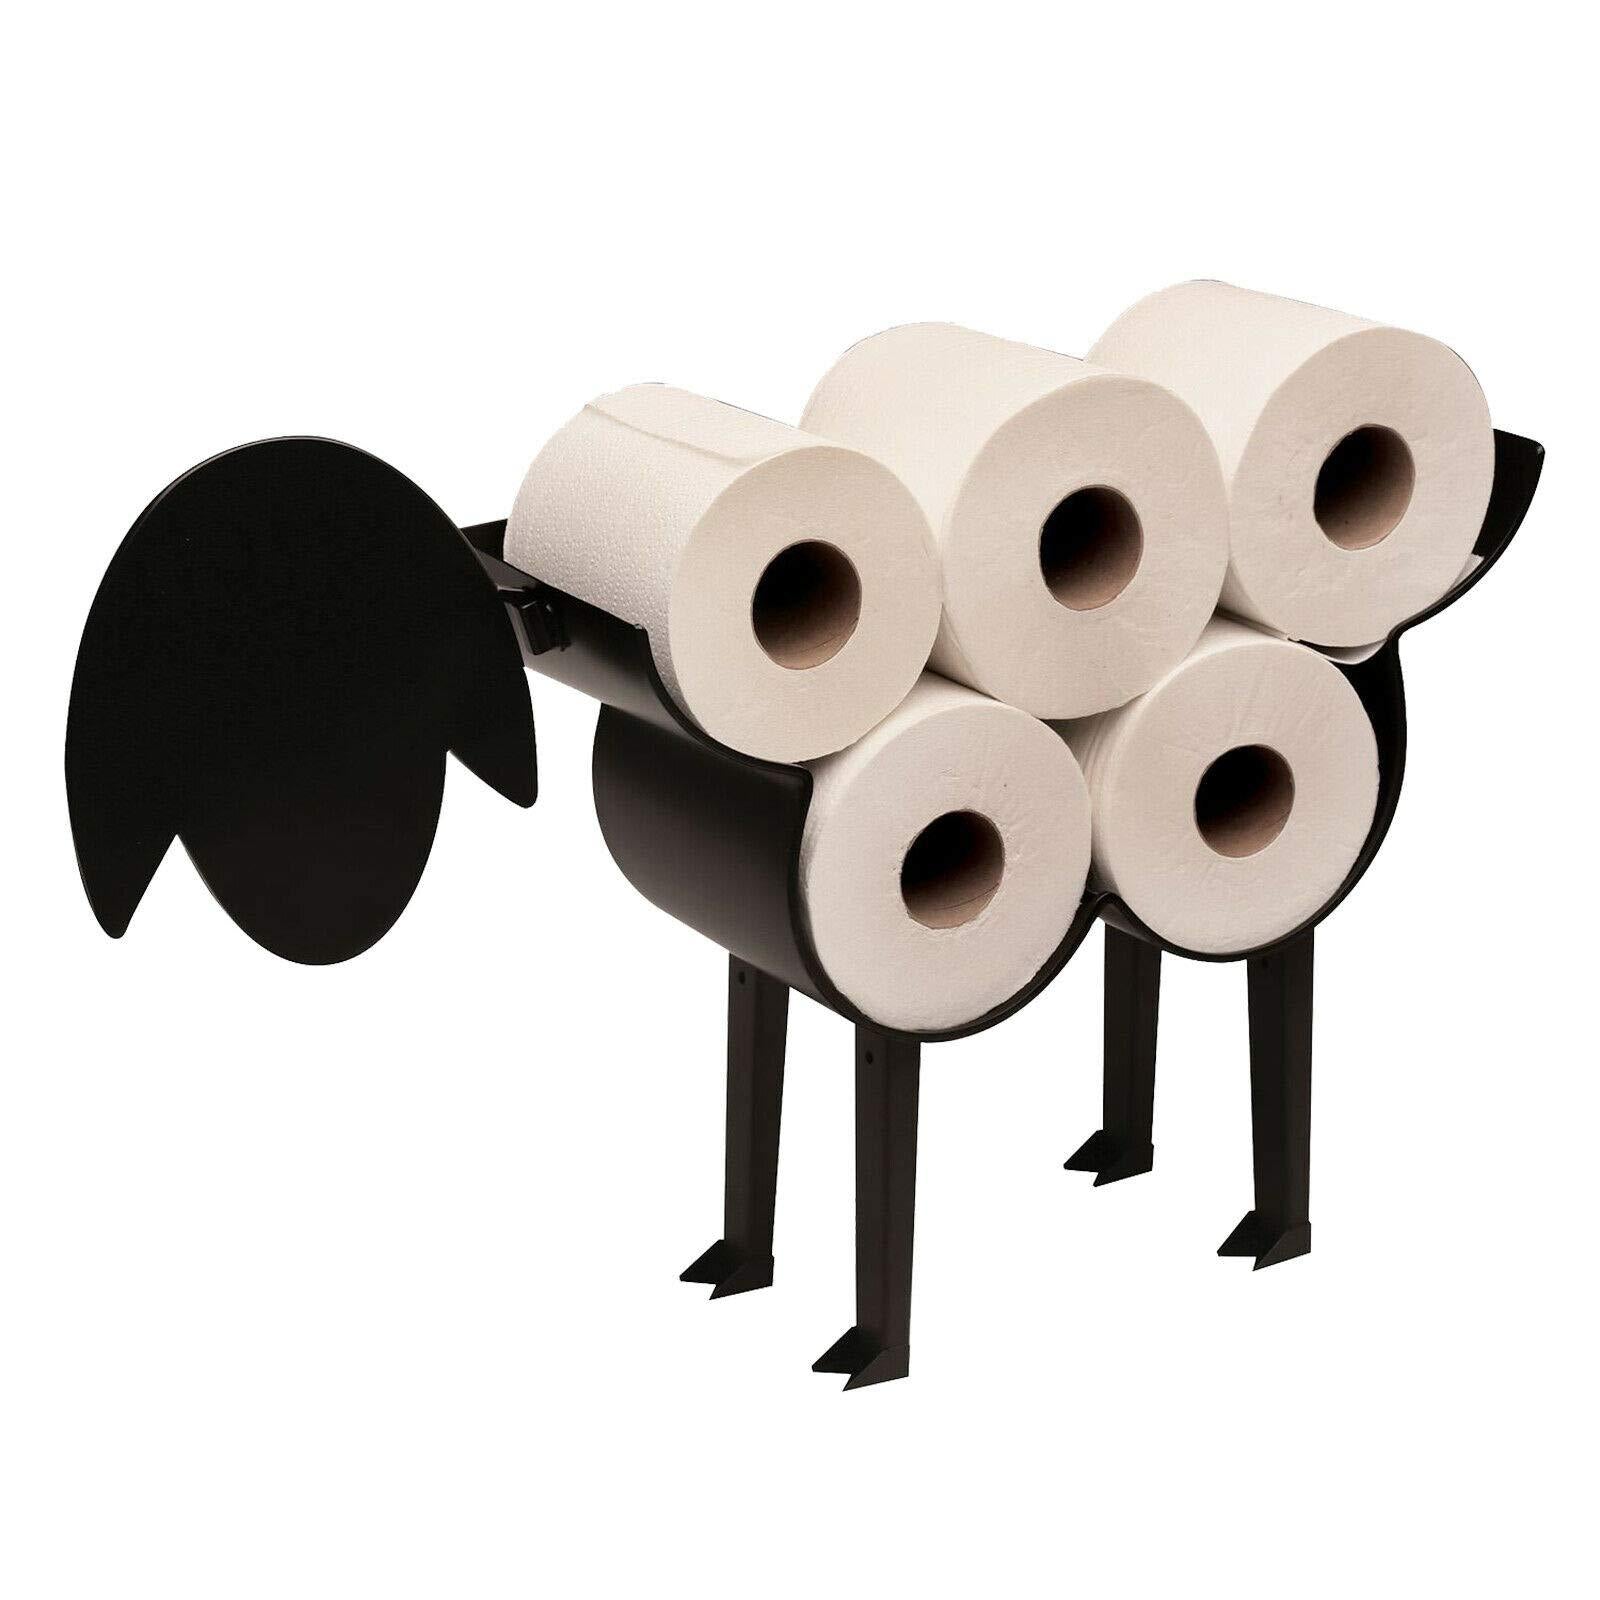 Supporto per rotolo di carta igienica a forma di pecora